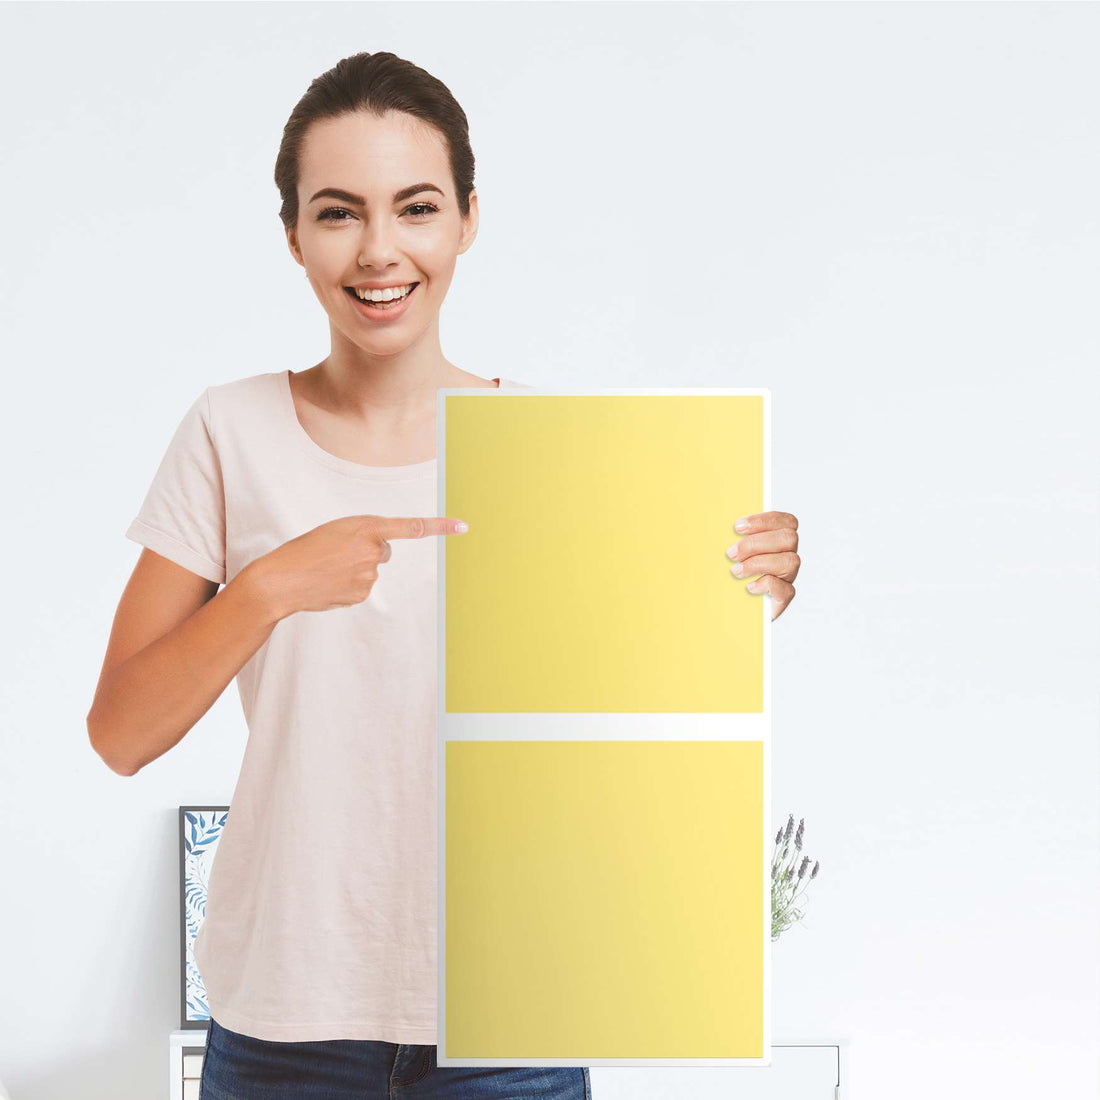 Klebefolie für Möbel Gelb Light - IKEA Expedit Regal 2 Türen Hoch - Folie